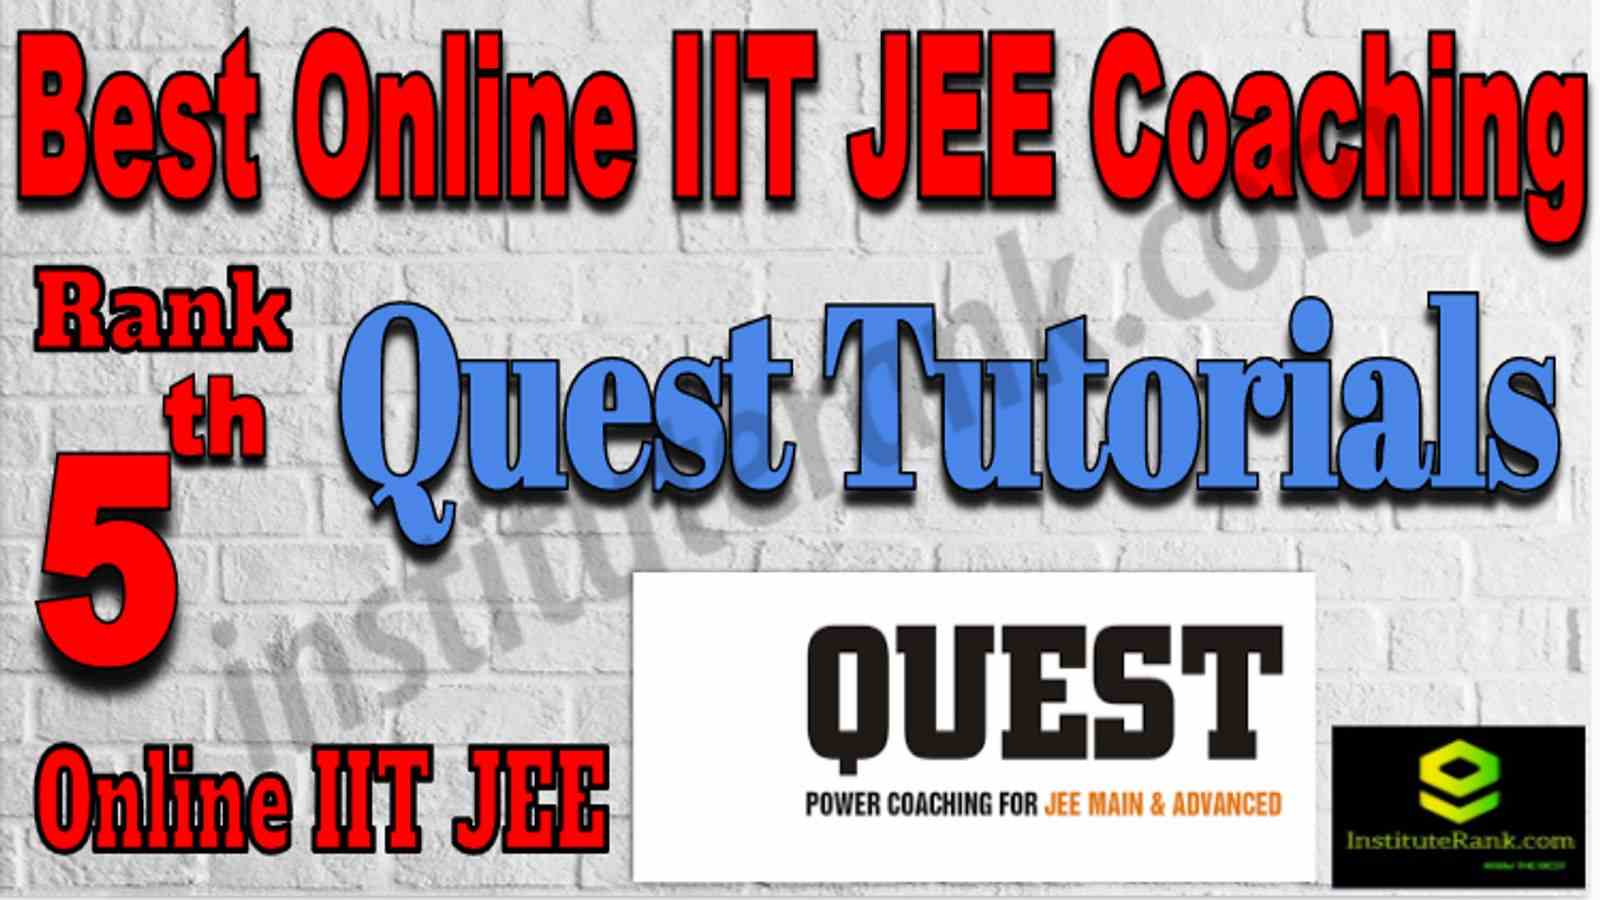 Rank 5 Best Online IIT JEE Coaching